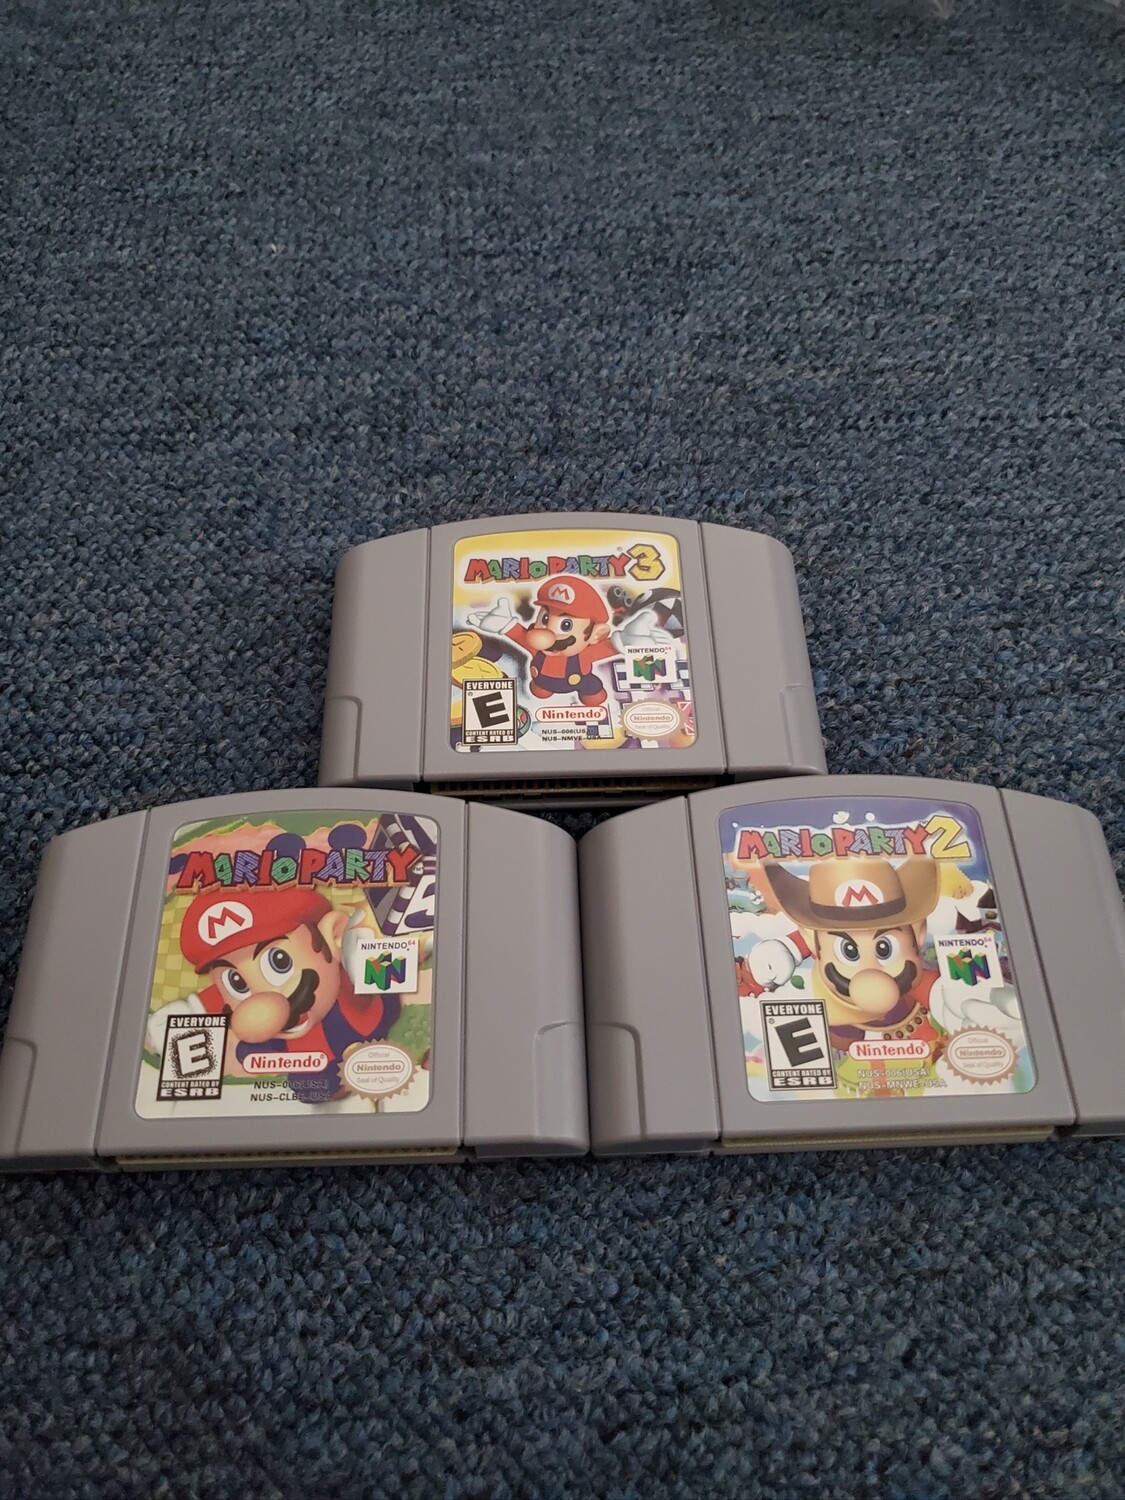 Mario Party 1,2,3 for Nintendo 64!